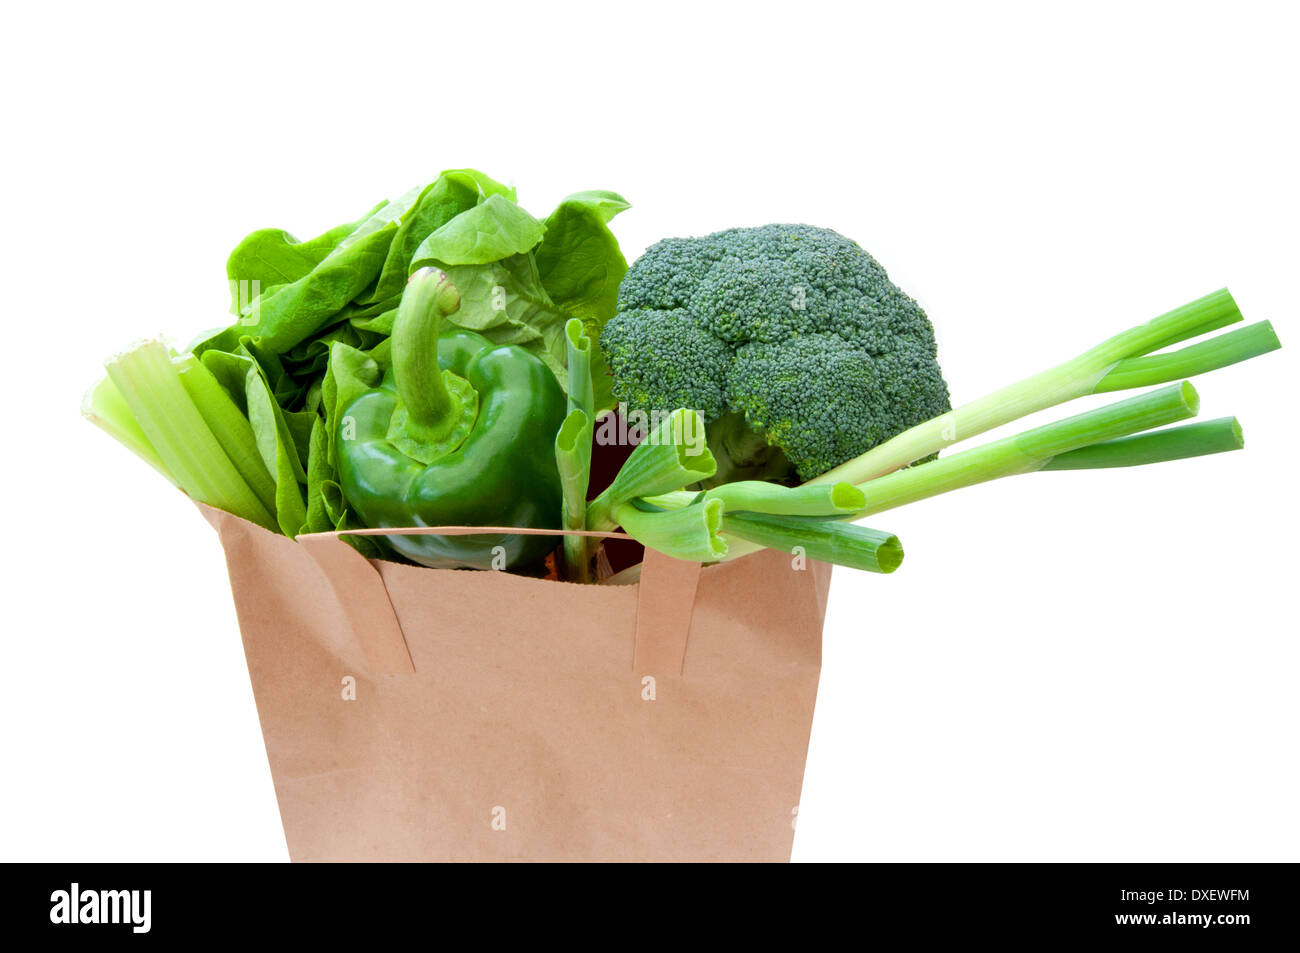 Légumes verts à l'intérieur d'un sac brun Banque D'Images